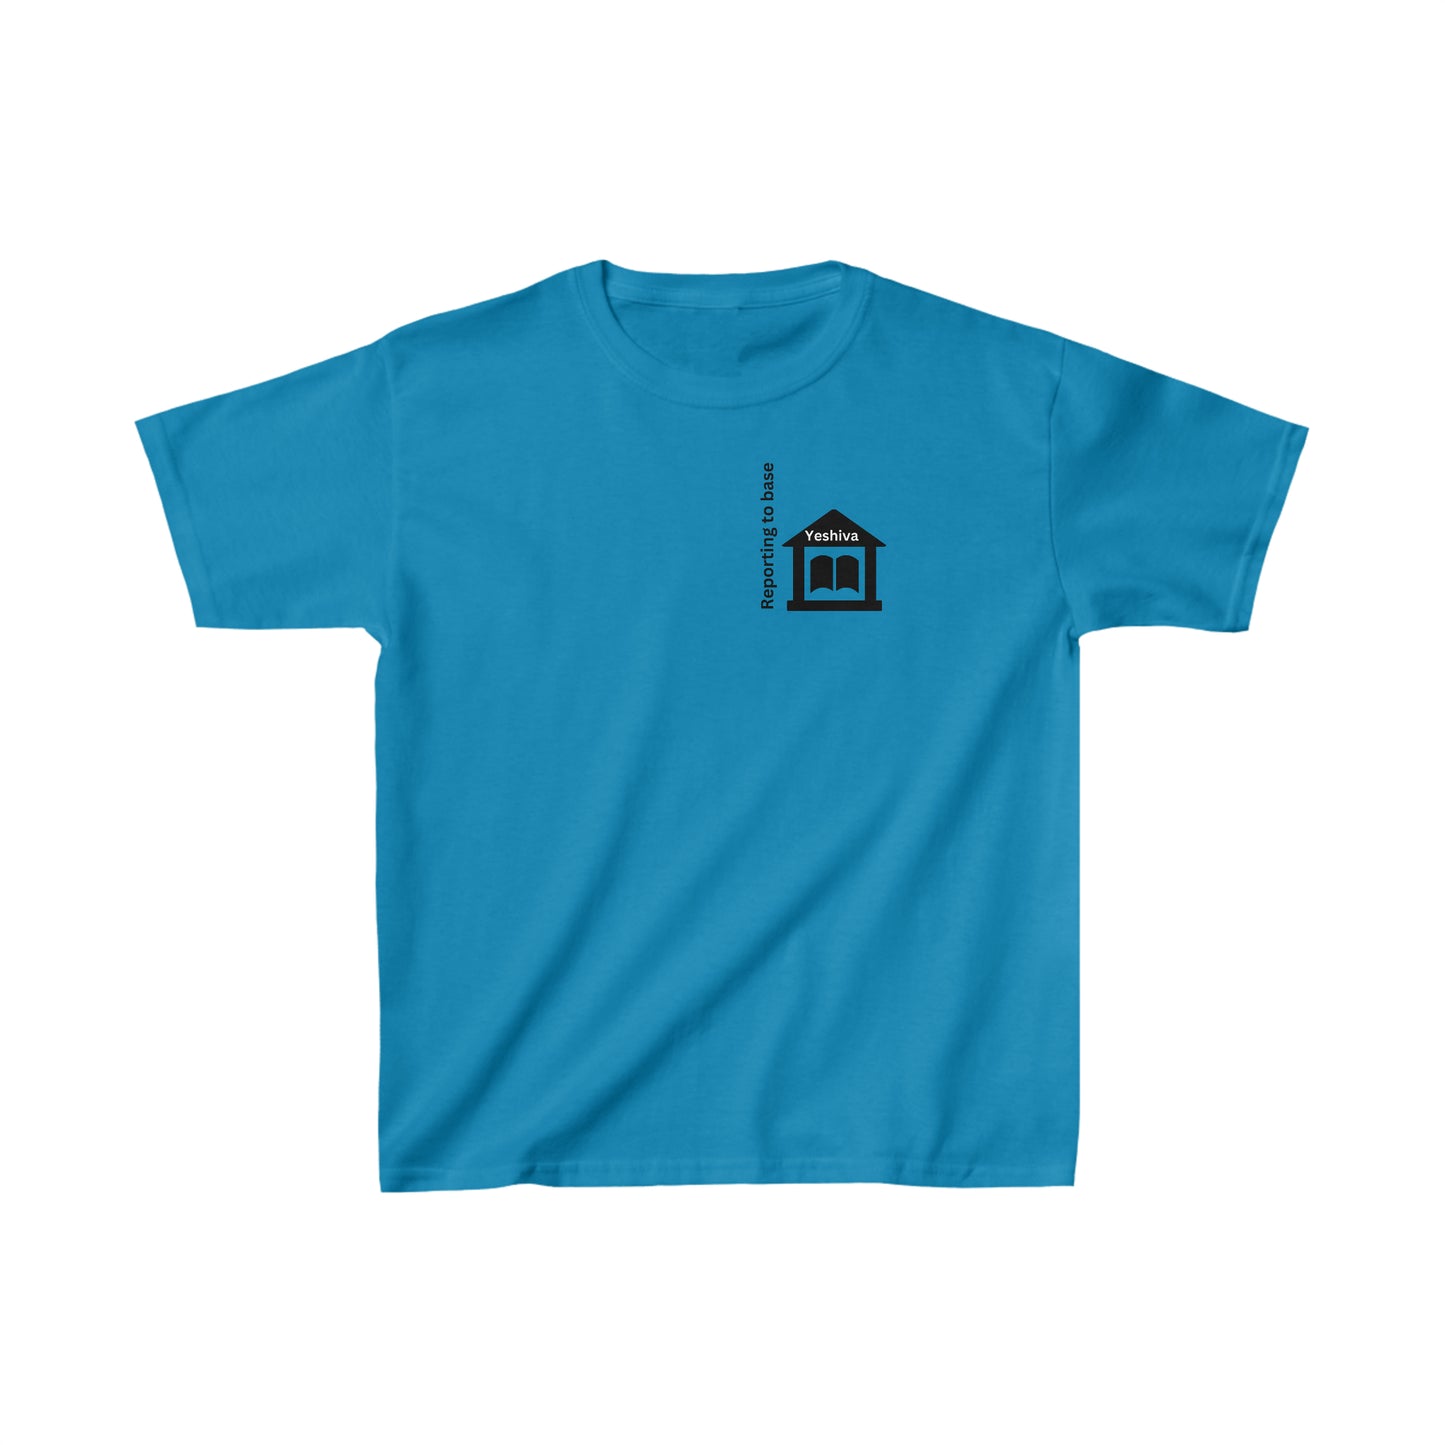 Boys' Reporting to Base: Yeshiva short sleeve t-shirt